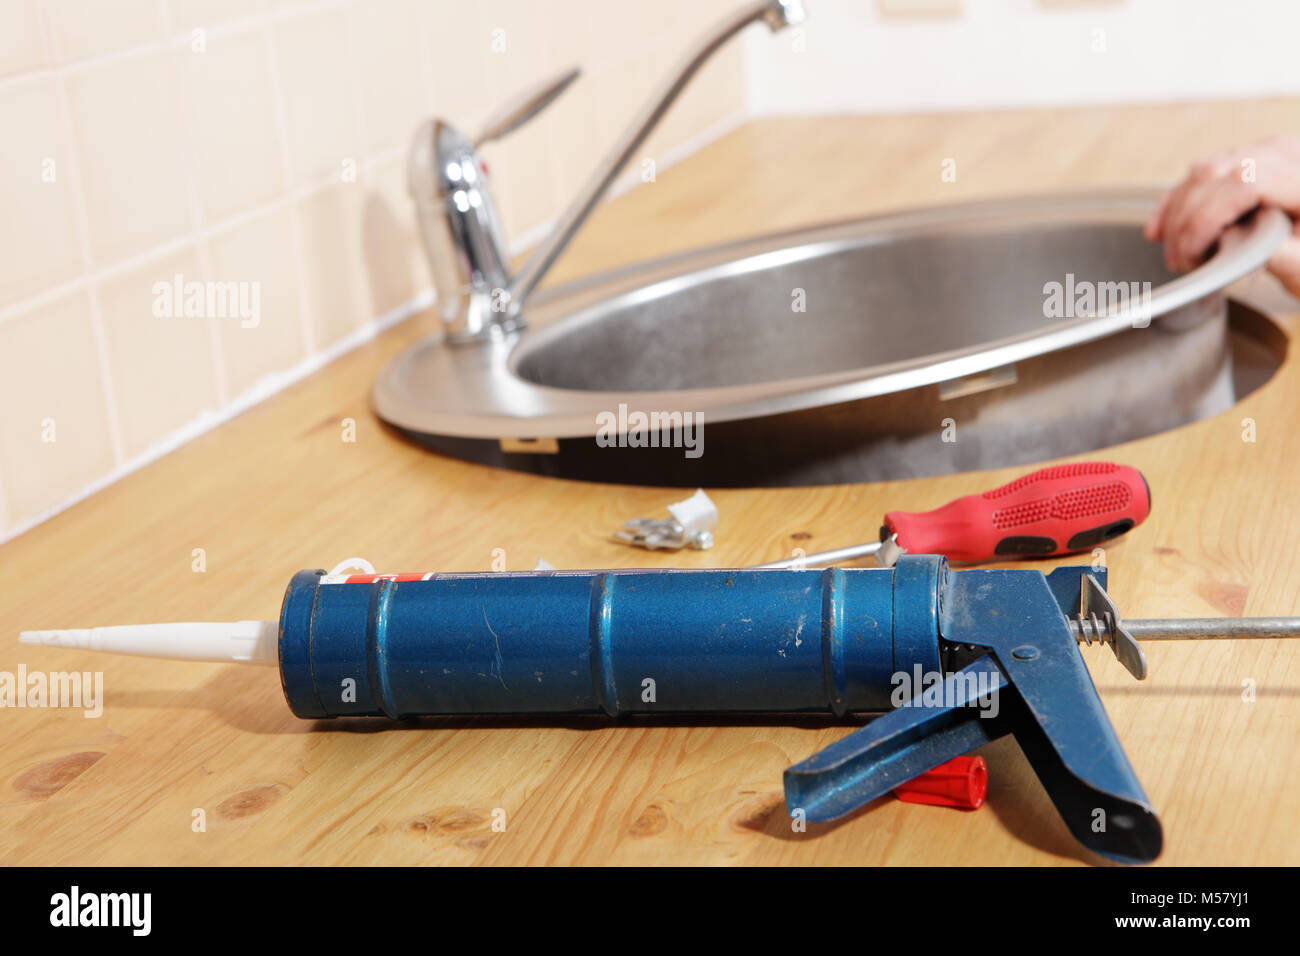 Pistola erogatrice con sigillante al silicone contro il lavello da cucina il processo di installazione Foto Stock